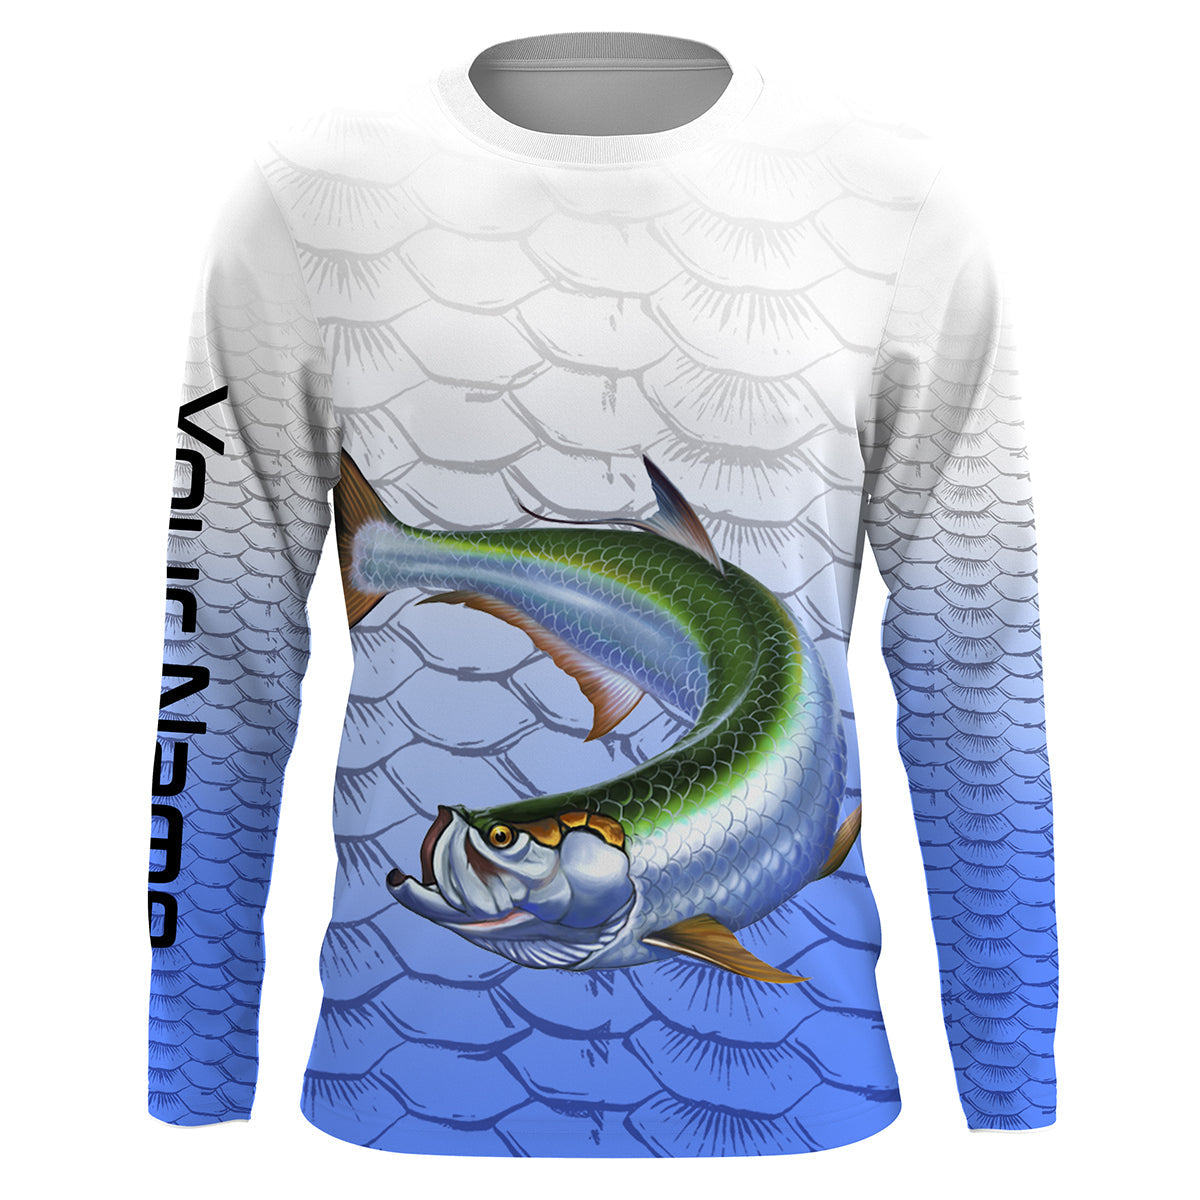 Tarpon Fishing Shirt for Men Long Sleeve Sun Protection UV UPF 30+